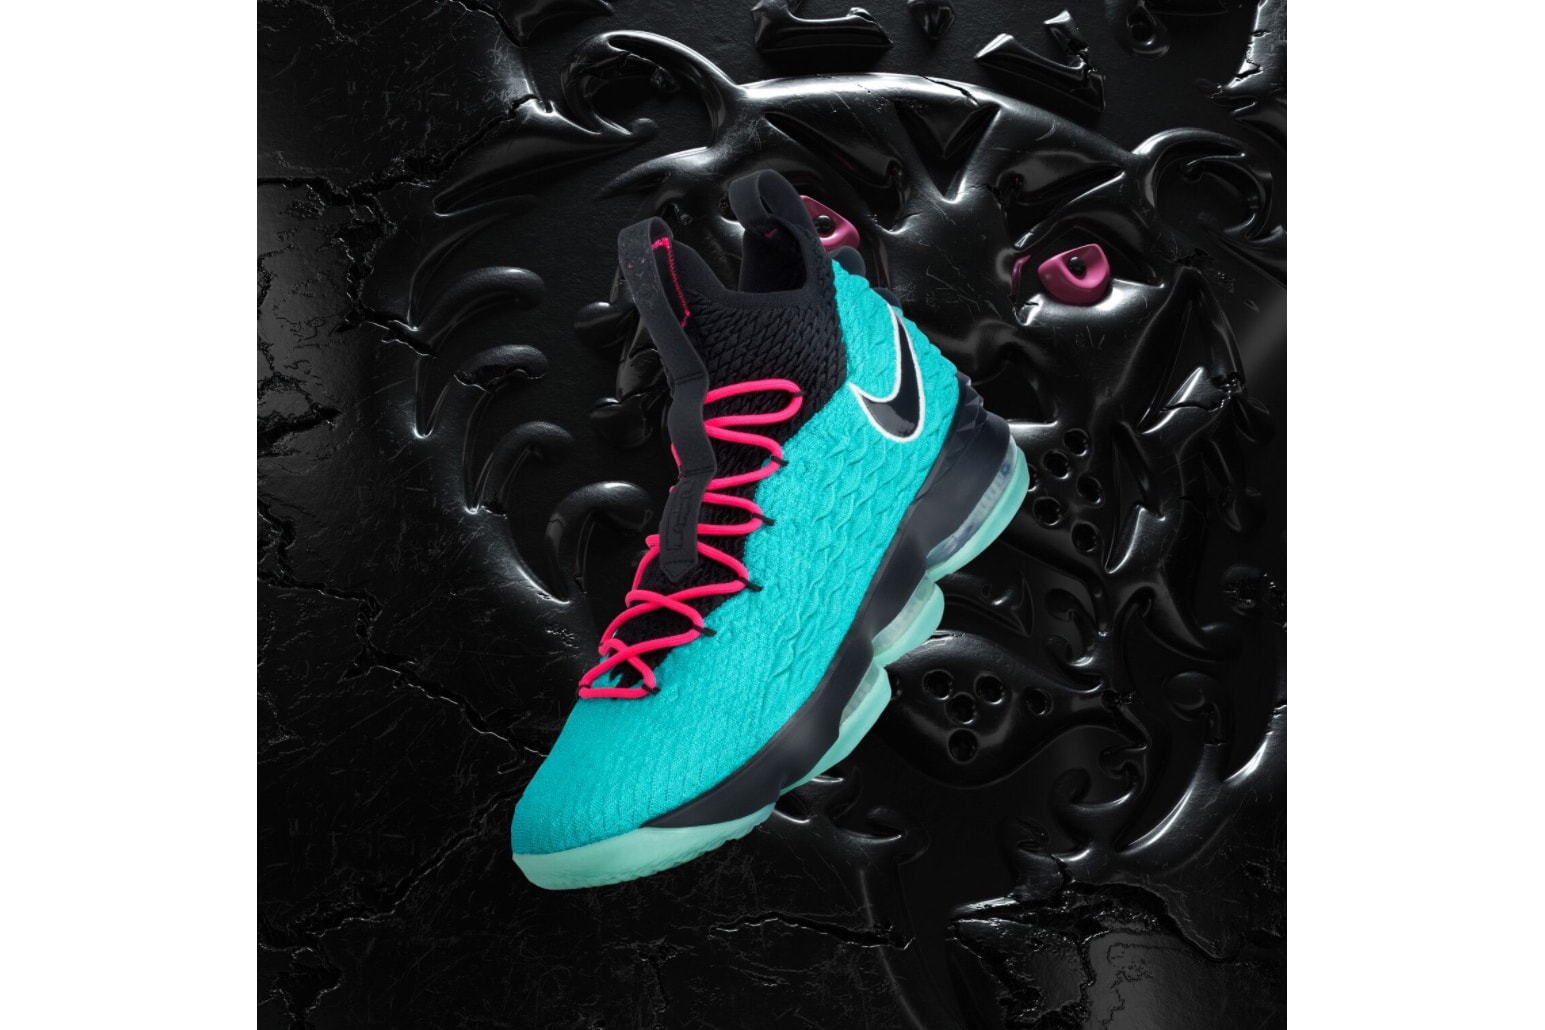 Nike LeBron 15 South Beach black teal pink sneakers footwear LeBron James